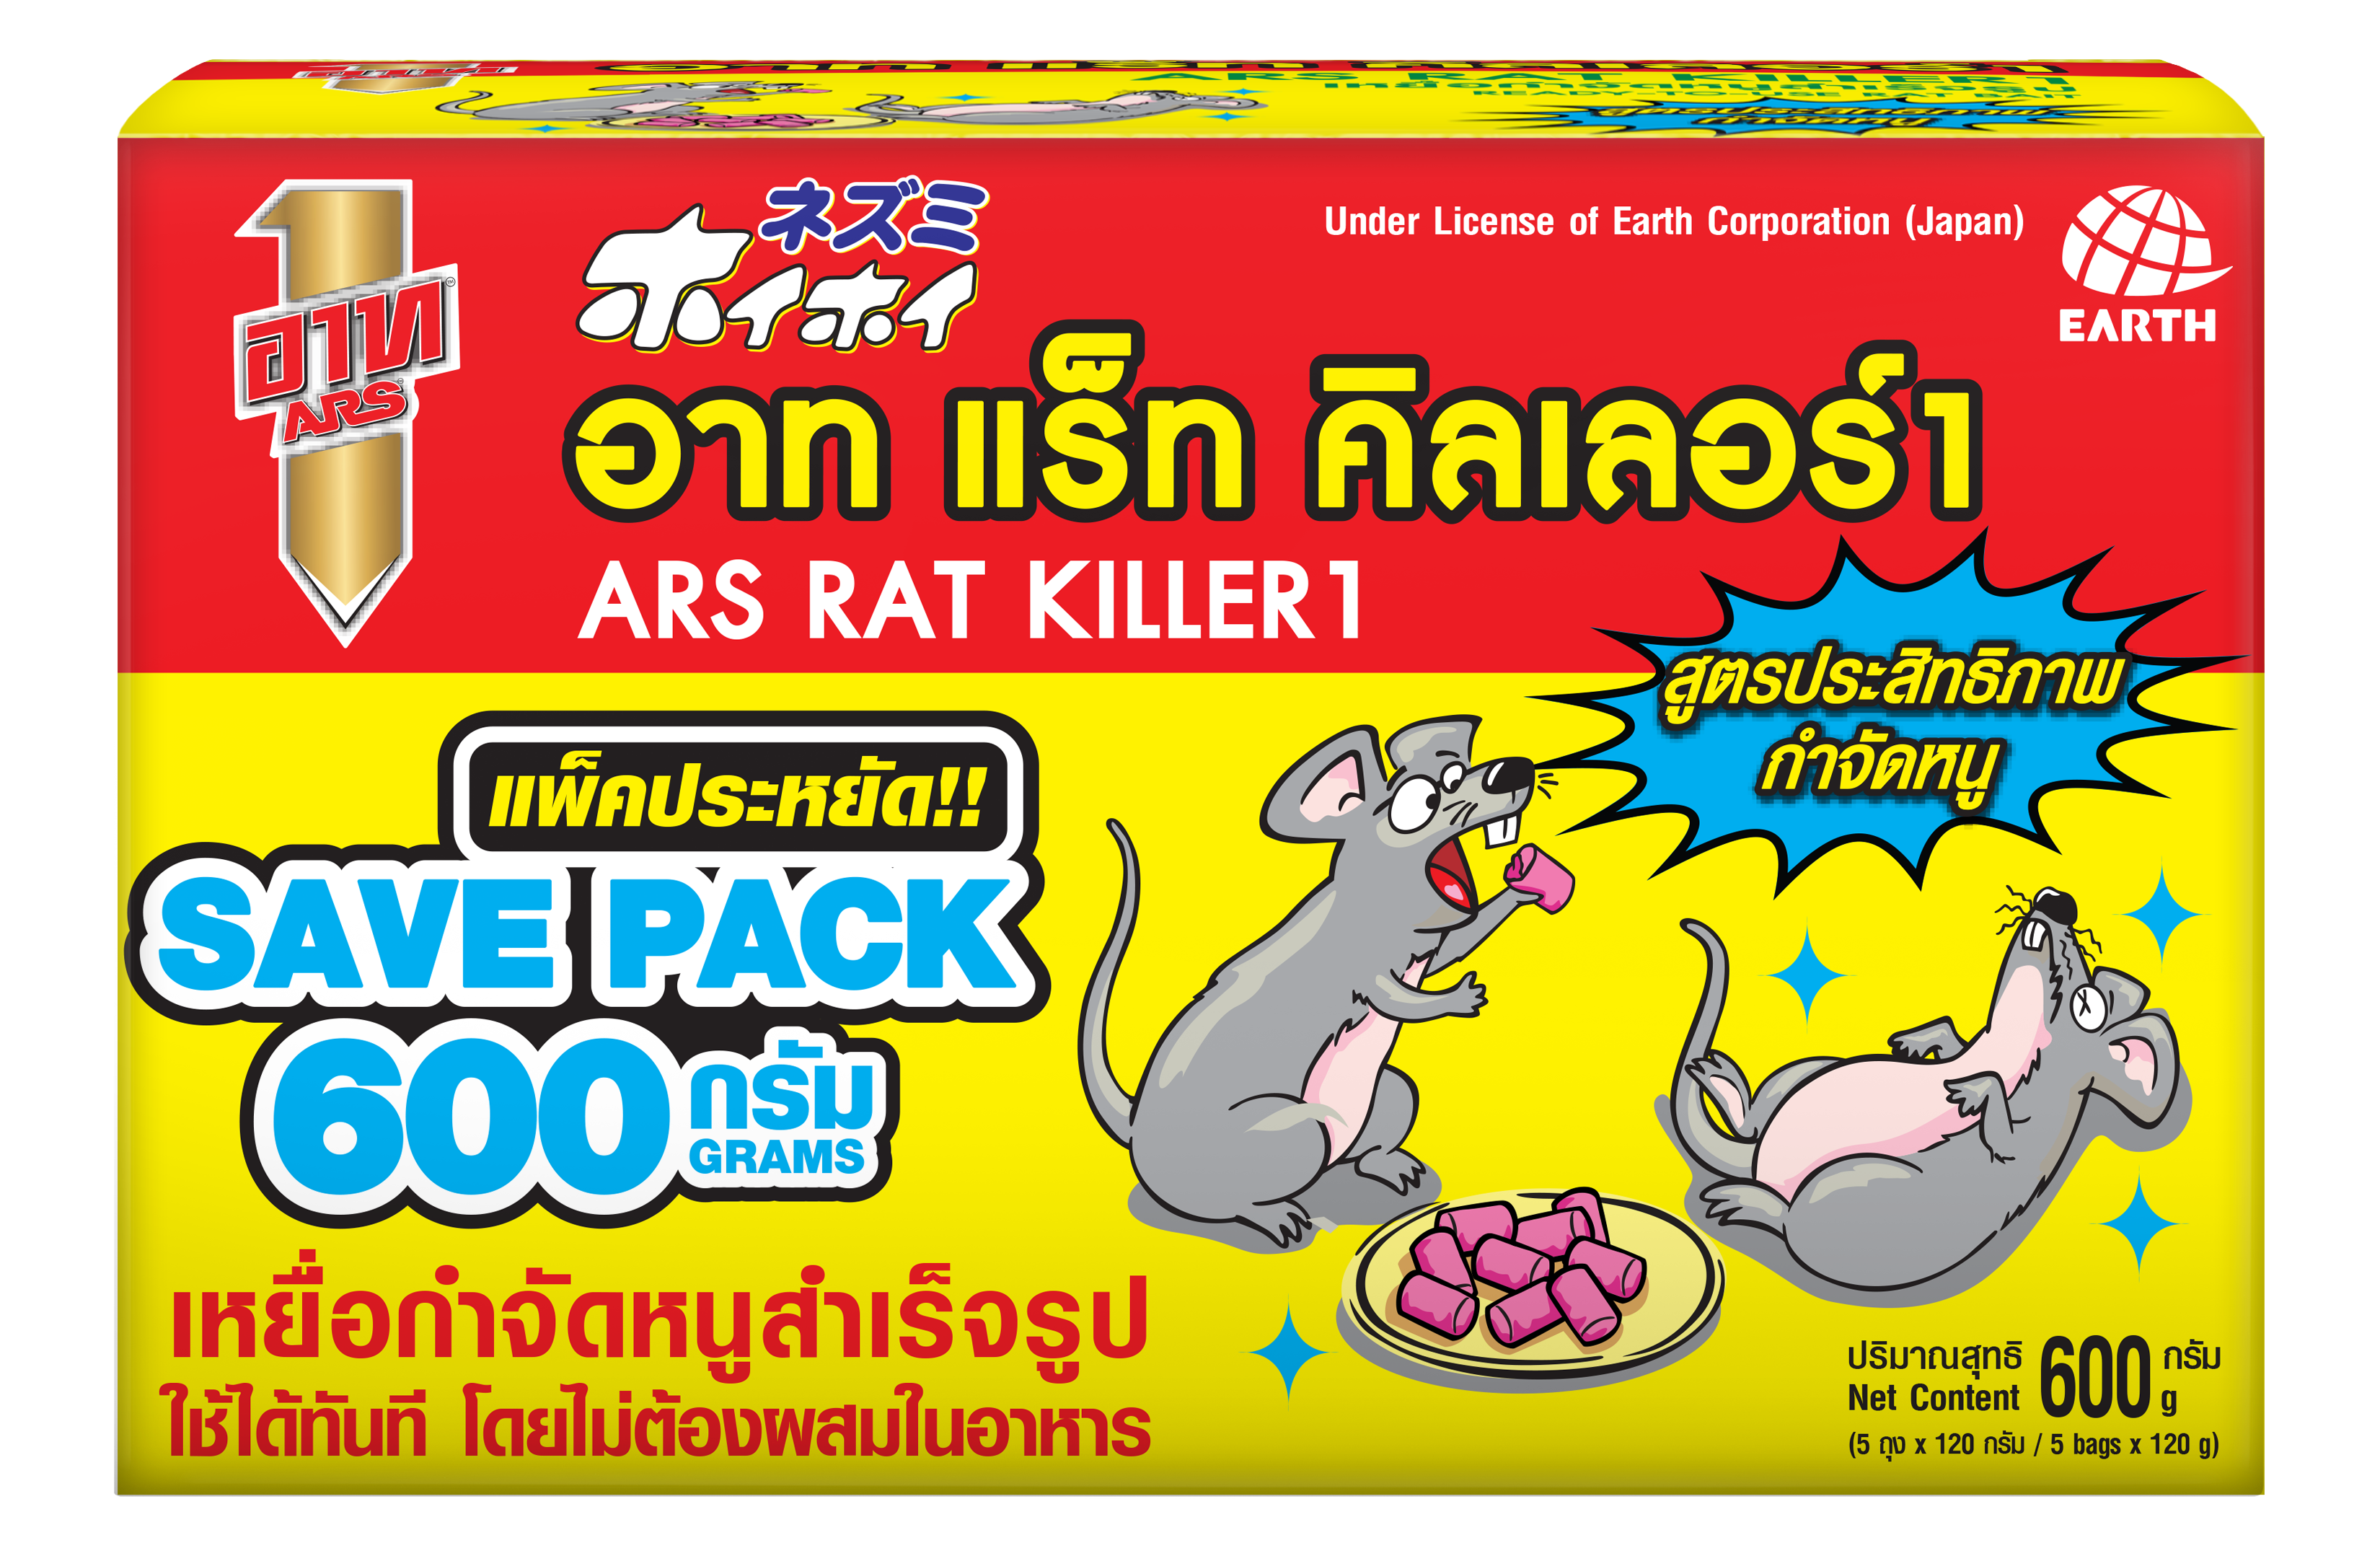 ARS RAT KILLER 1 SAVE PACK (600 grams)